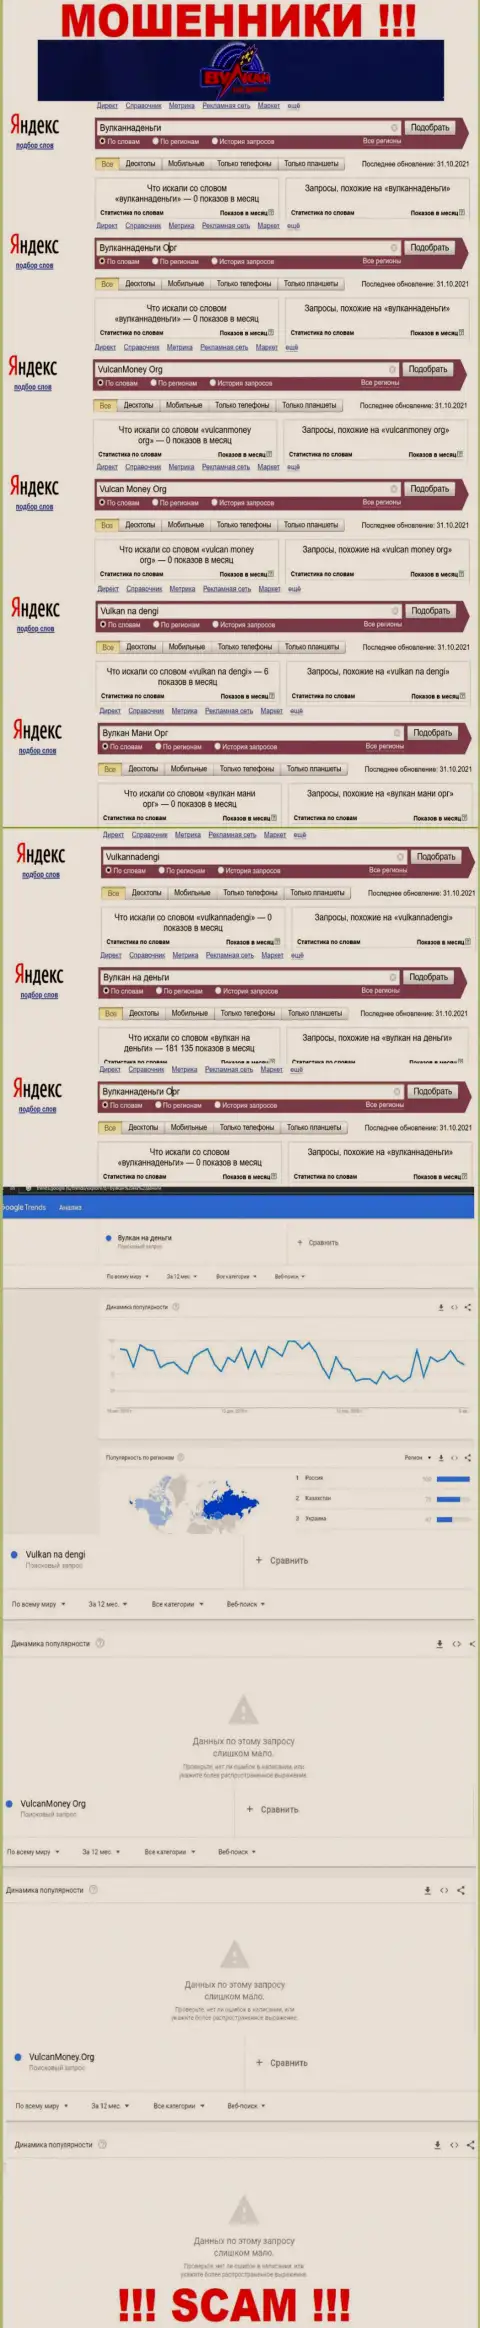 Подробный анализ числа запросов в поисковиках интернета по мошенникам Vulkan na dengi